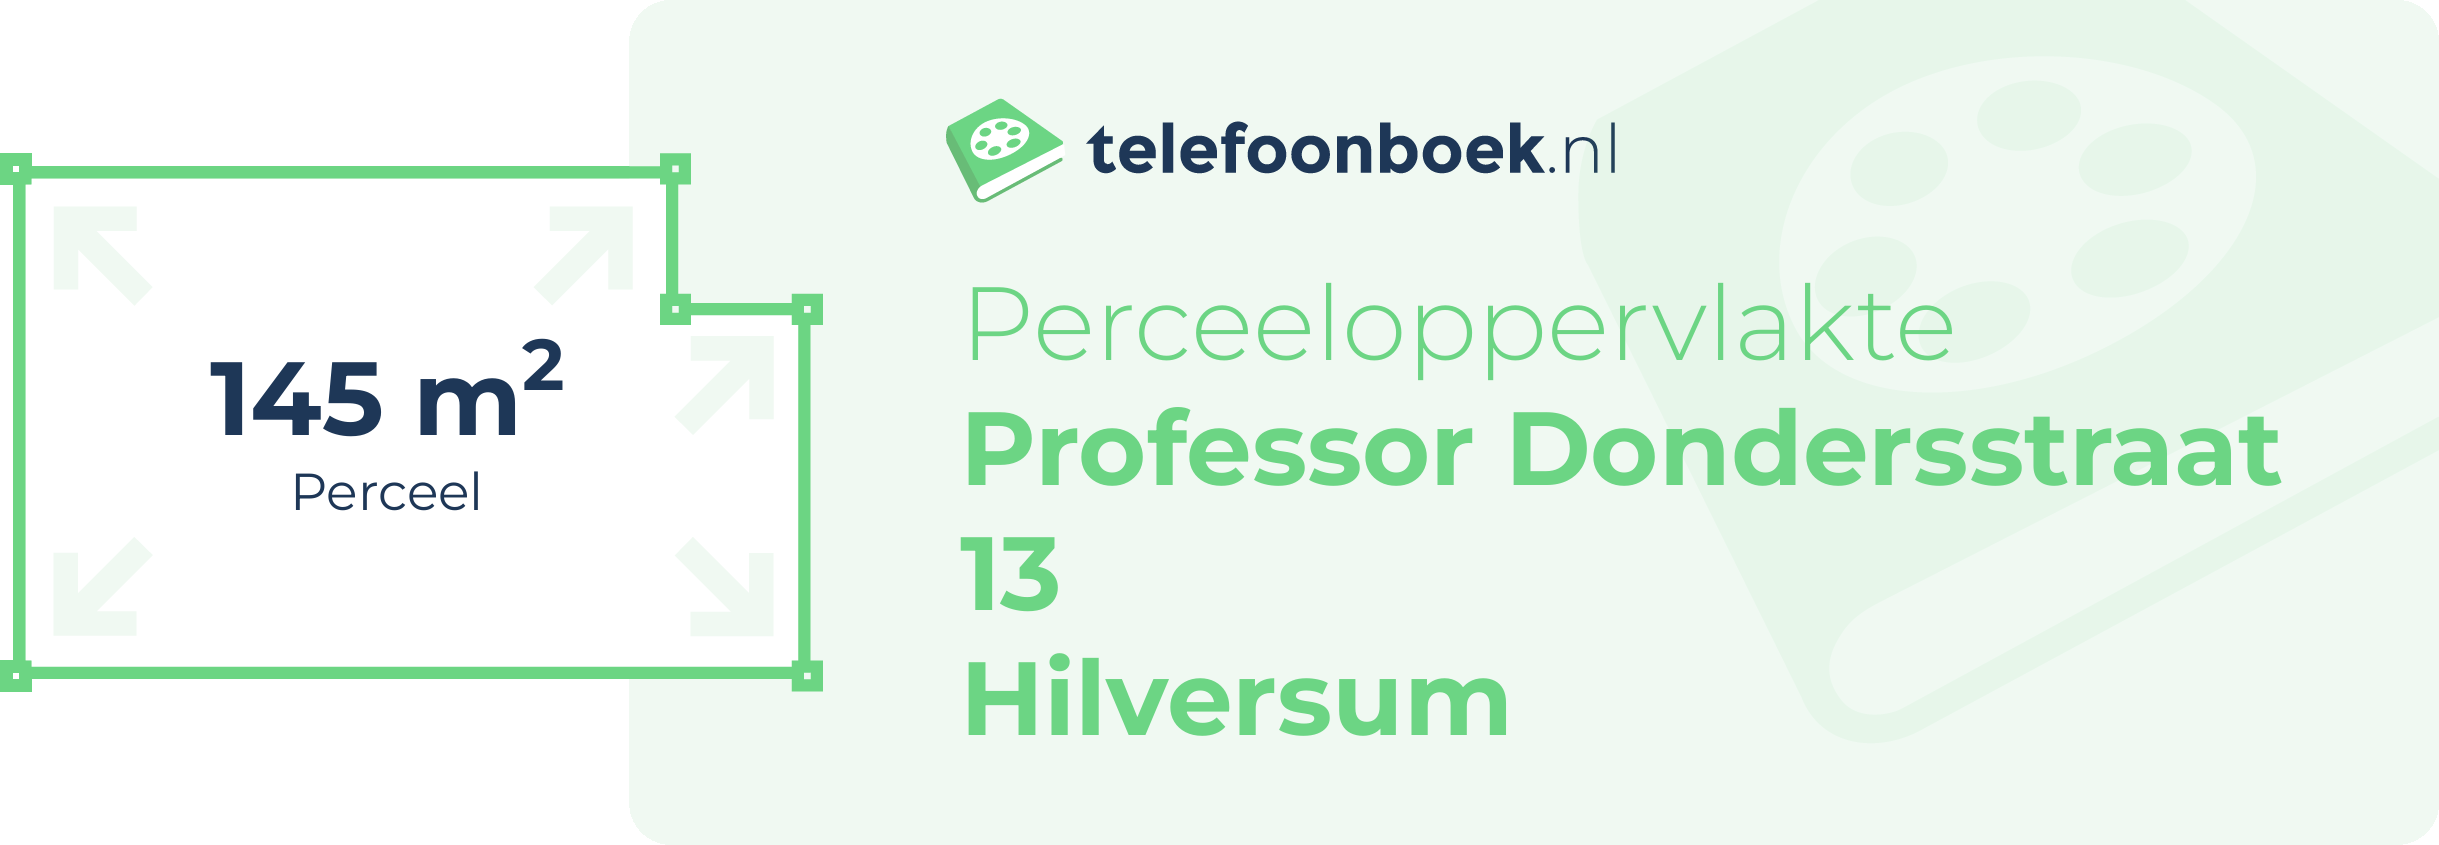 Perceeloppervlakte Professor Dondersstraat 13 Hilversum